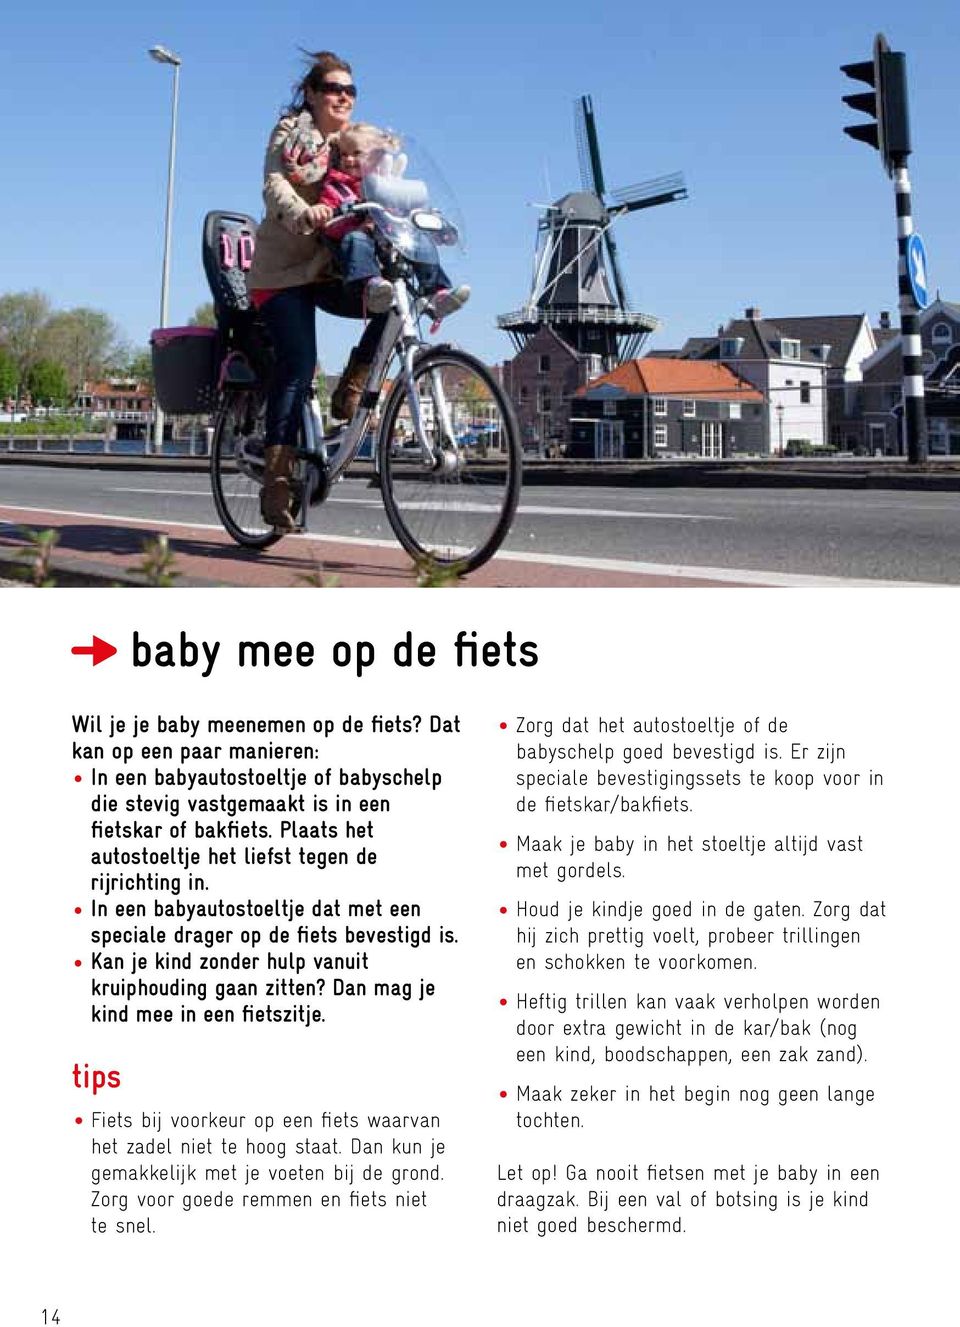 Dan mag je kind mee in een fietszitje. tips Fiets bij voorkeur op een fiets waarvan het zadel niet te hoog staat. Dan kun je gemakkelijk met je voeten bij de grond.